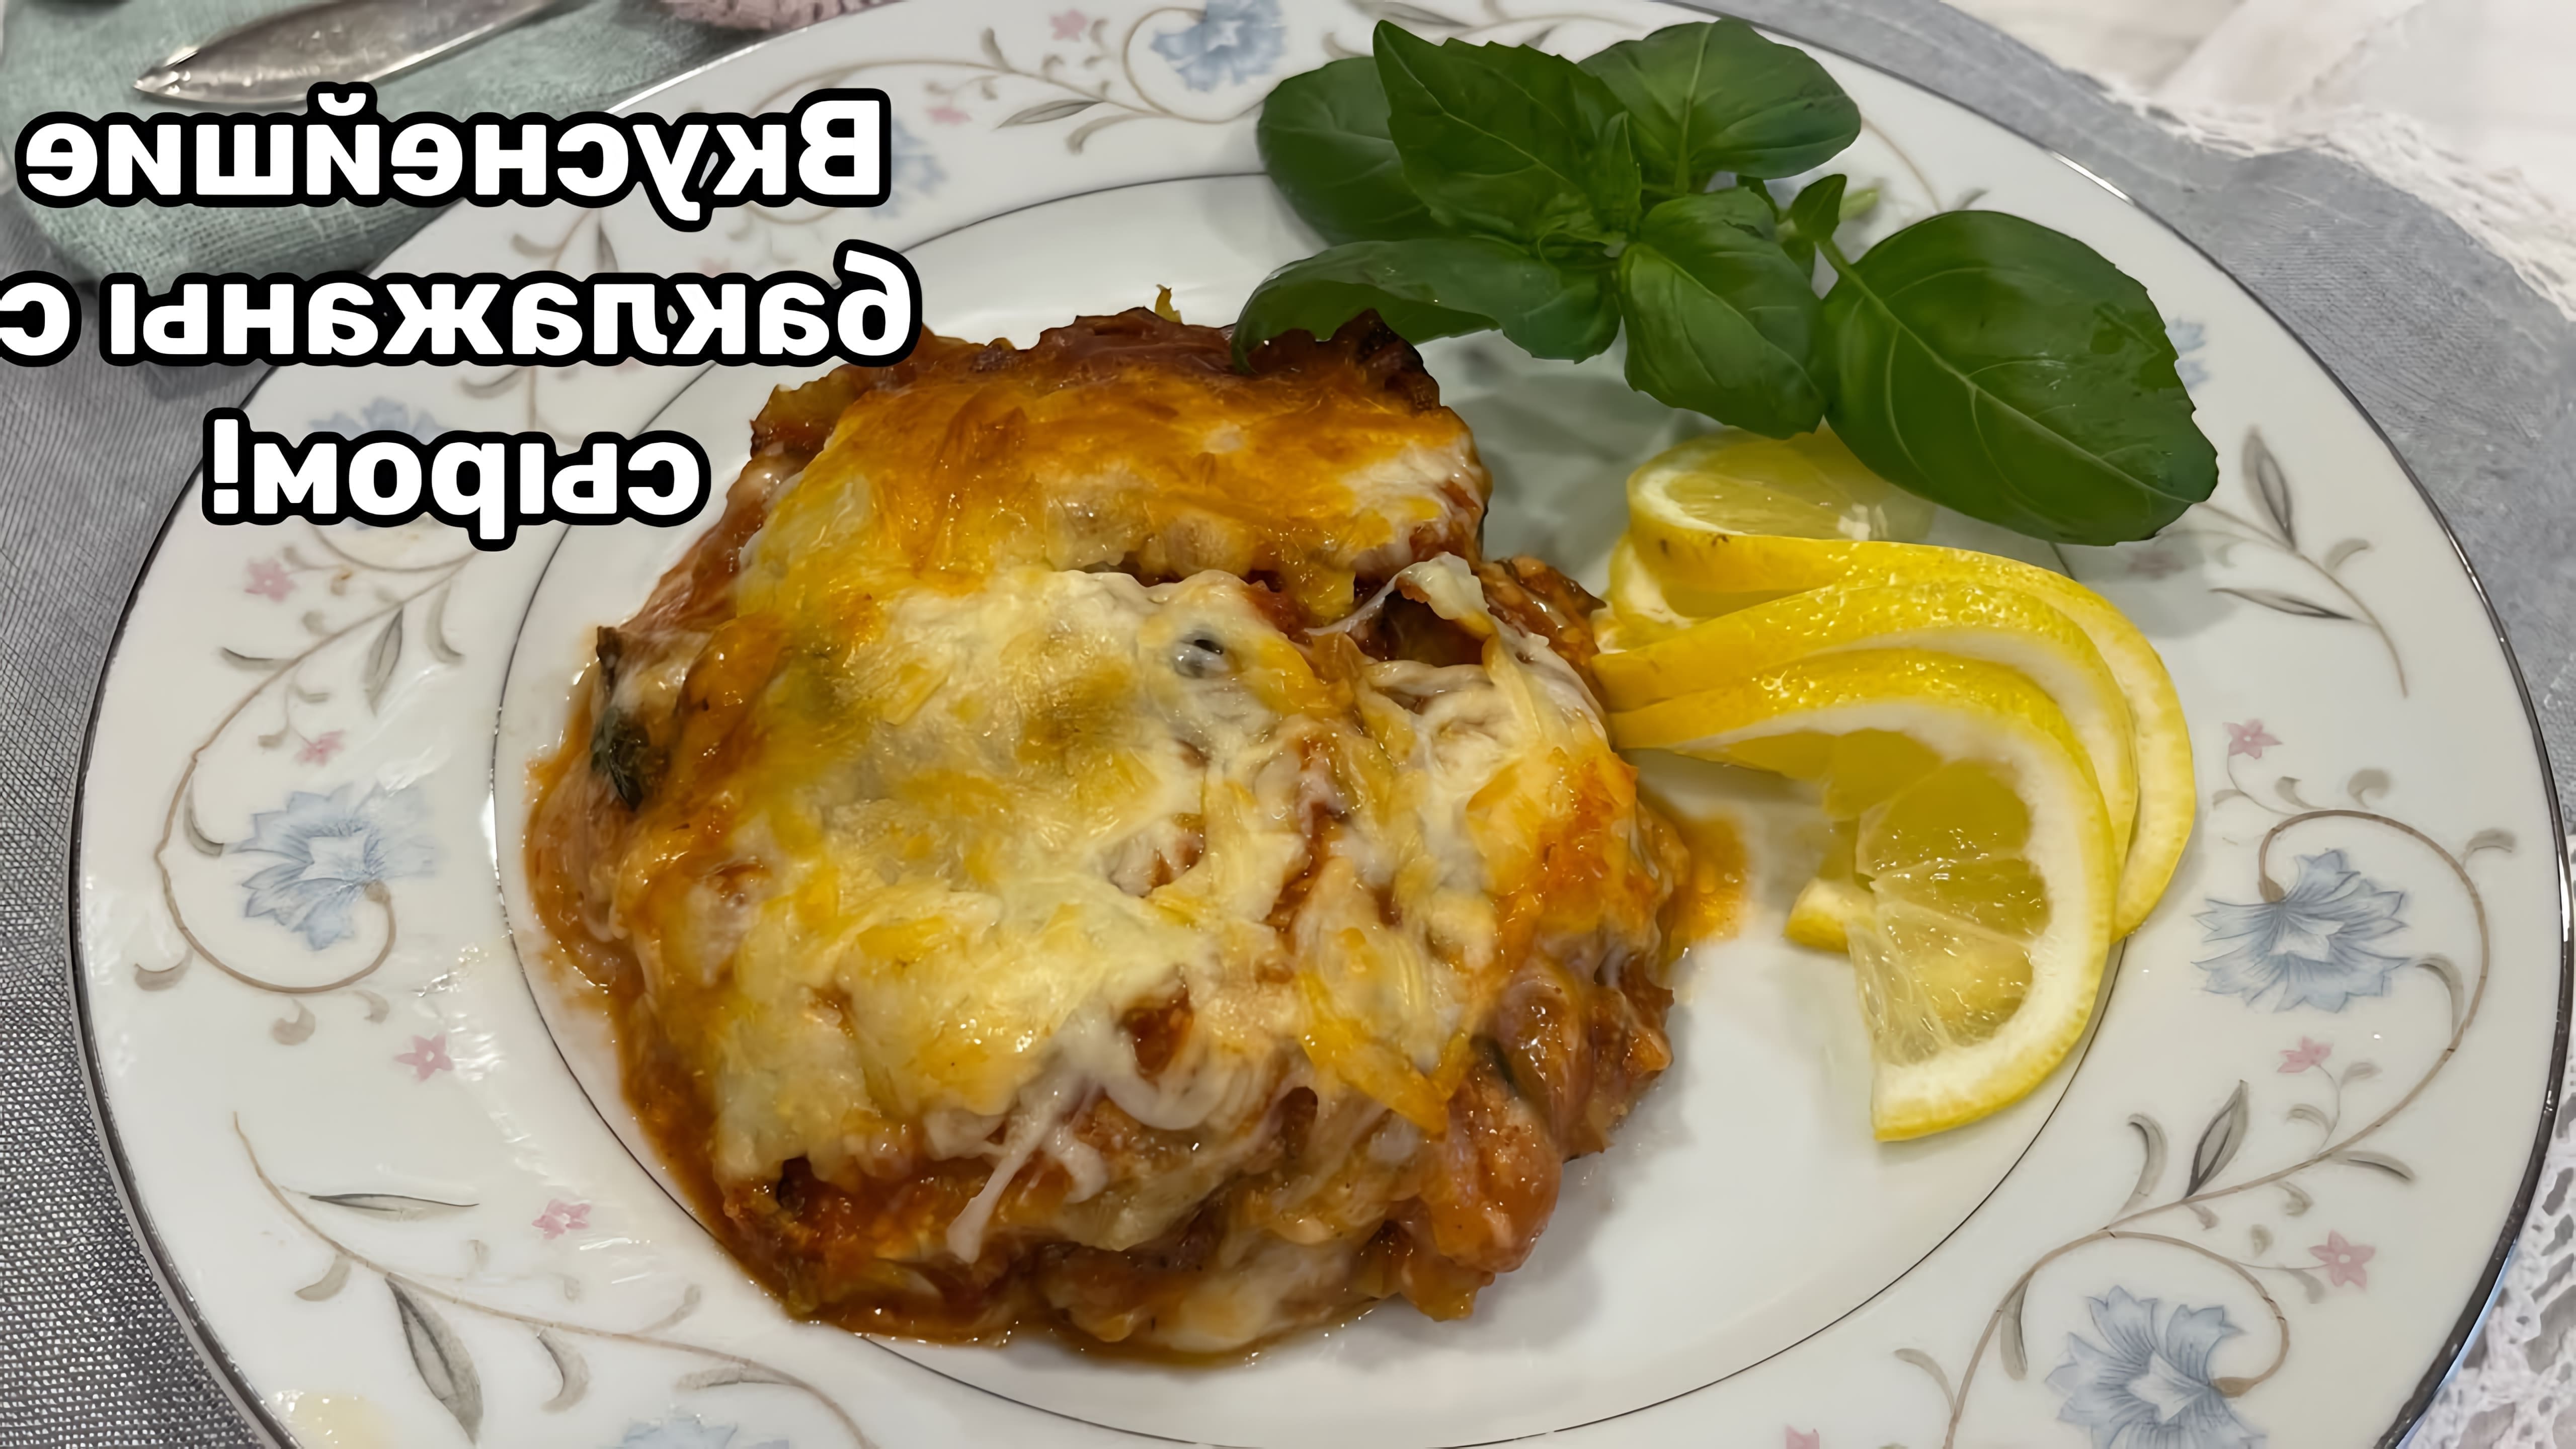 В этом видео демонстрируется рецепт приготовления итальянского блюда "Баклажаны с сыром пармезан и Моцареллой Eggplant Parmesan"